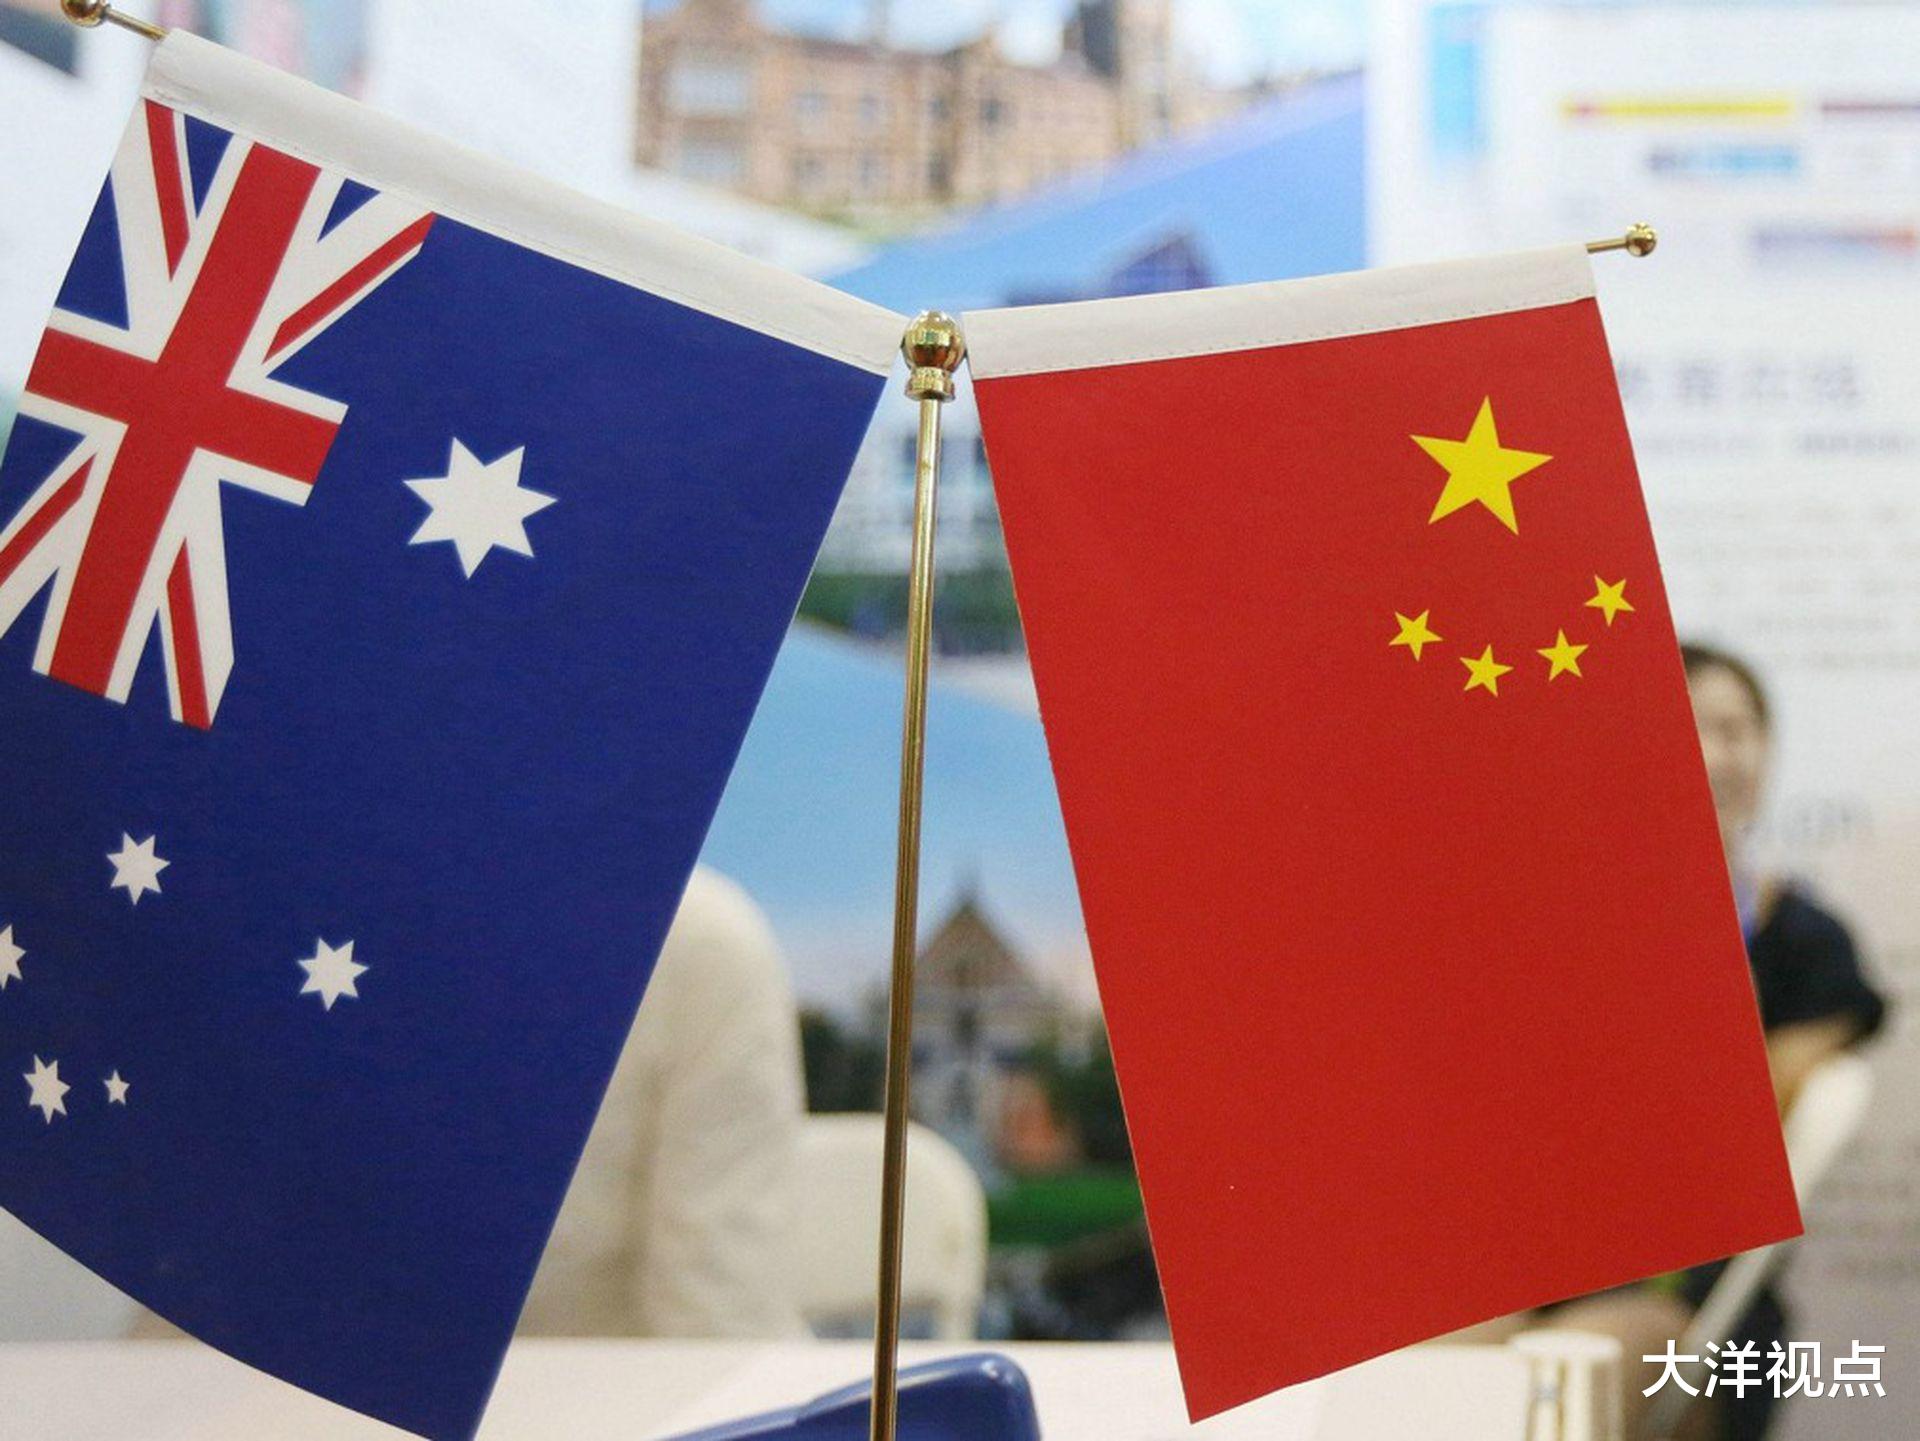 2%,使得澳大利亚对中国的贸易